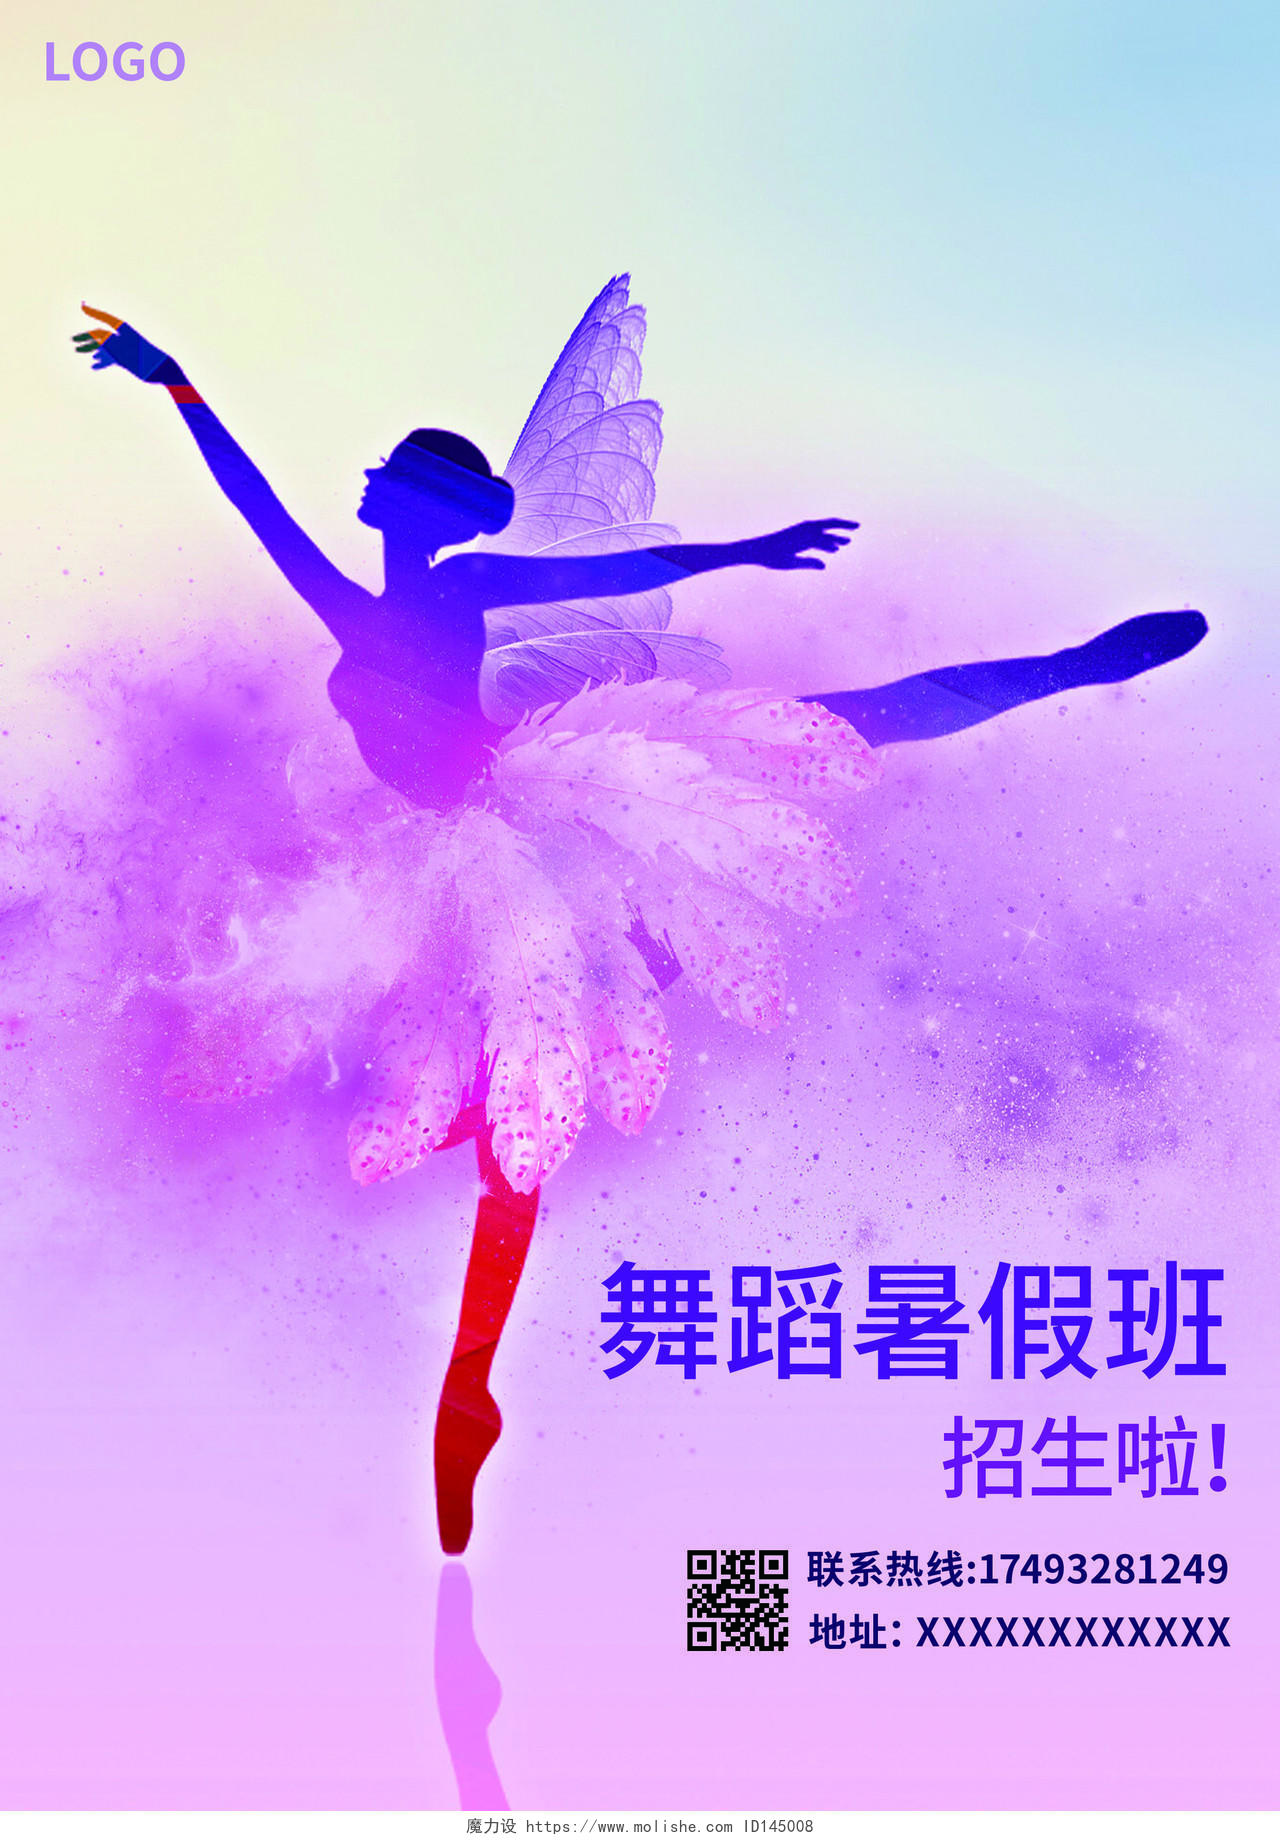 粉色水彩墨粉舞蹈暑假班舞蹈暑假班宣传单舞蹈暑假班招生宣传单